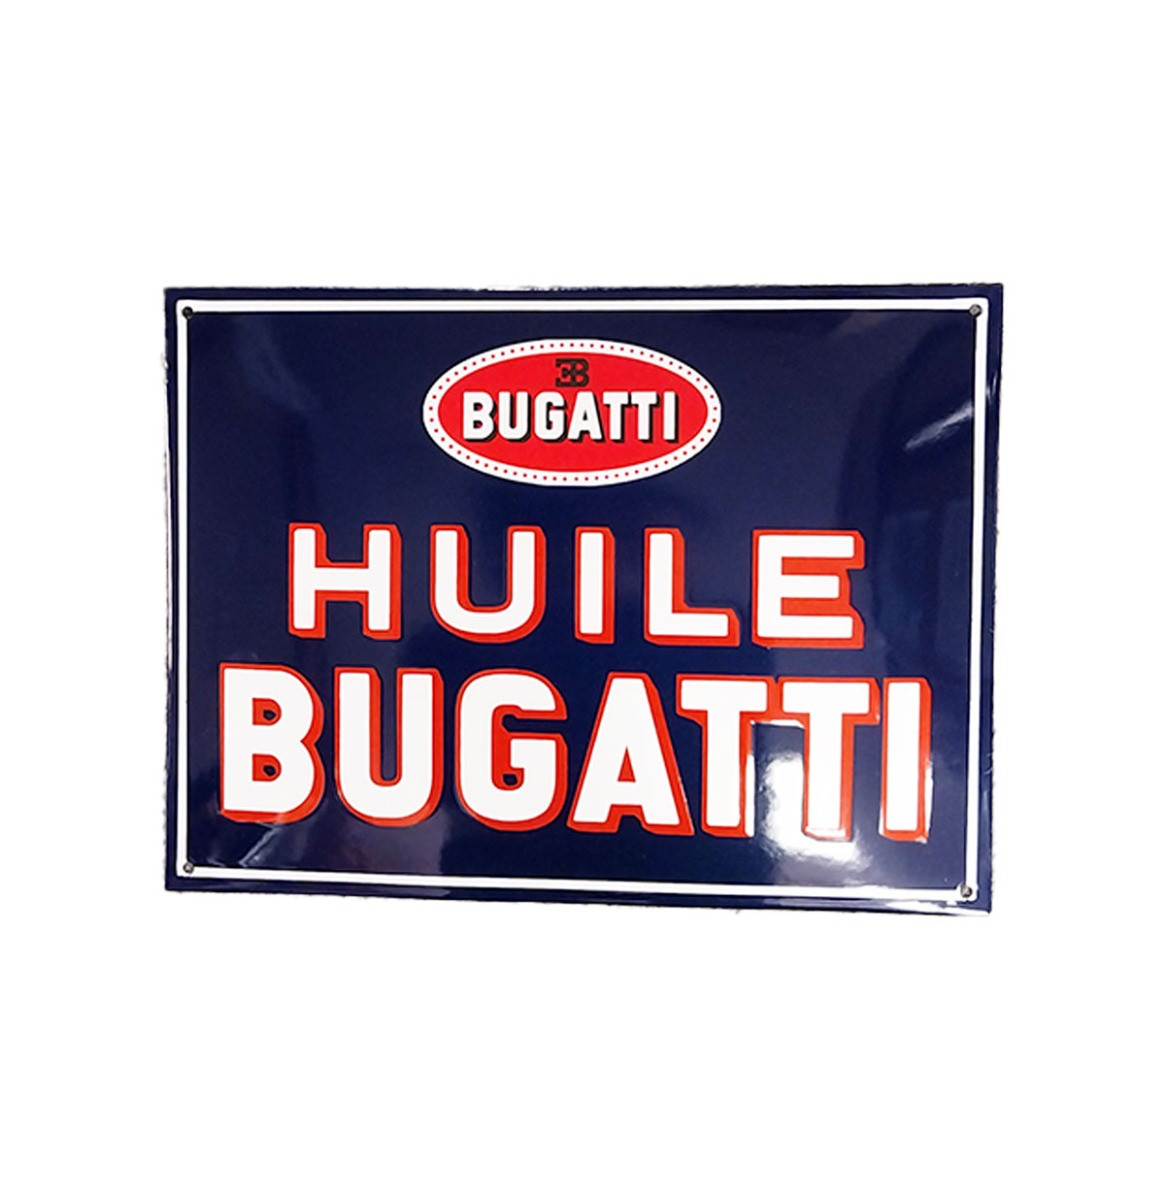 Huile Bugatti Emaille Bord - 40 x 30cm